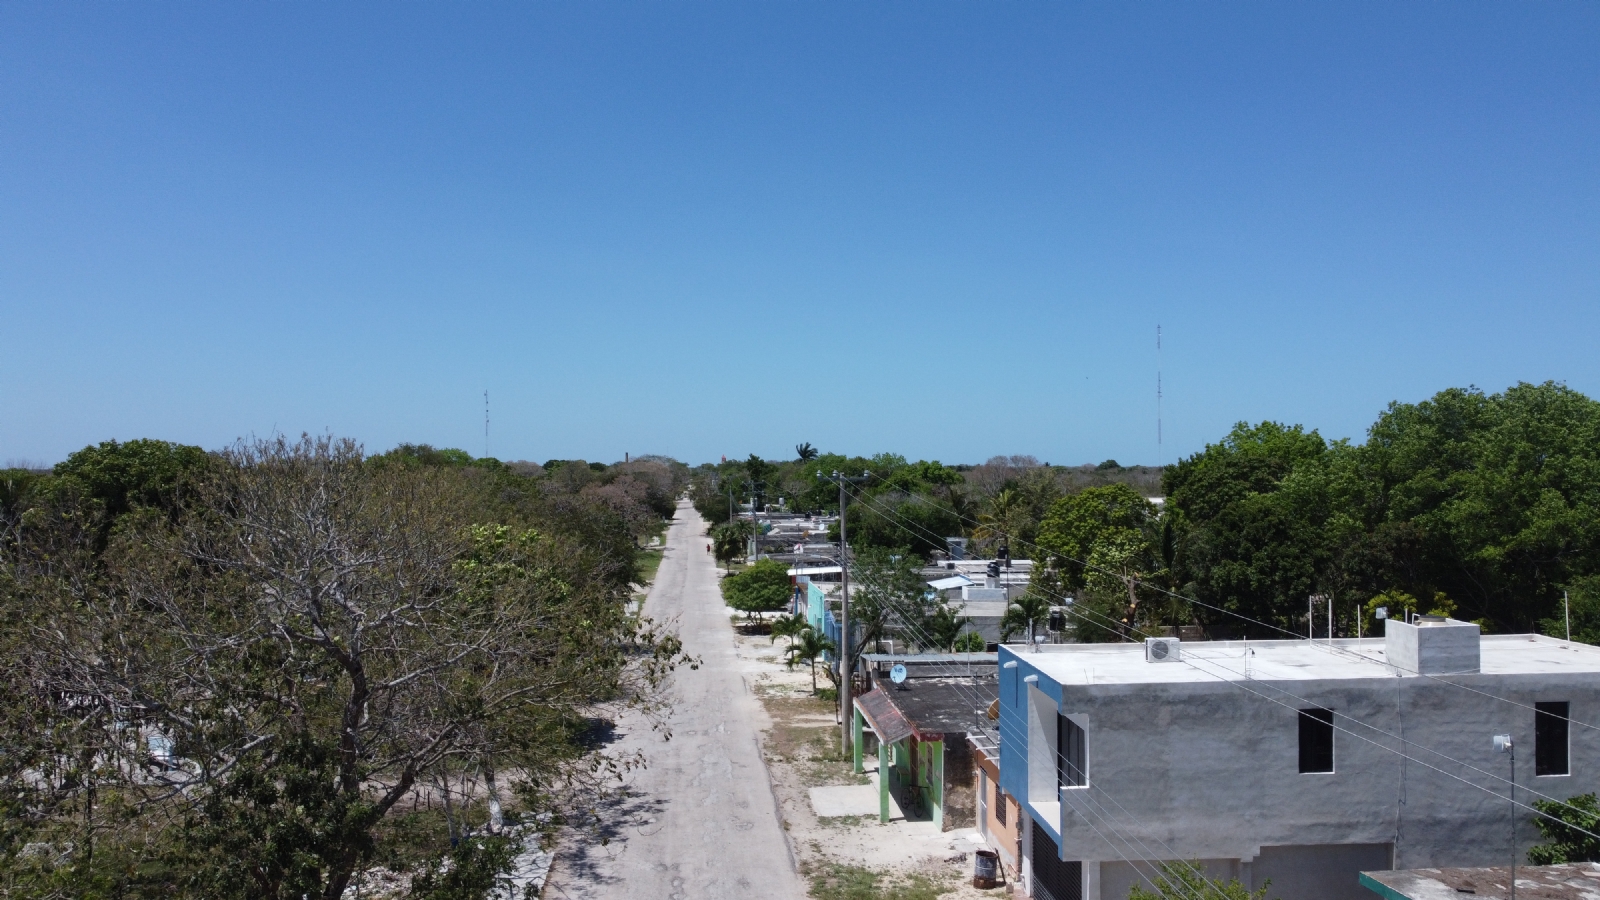 Lotes de inversión: Estos son los municipios de Yucatán donde se venden ‘ciudades en el monte’